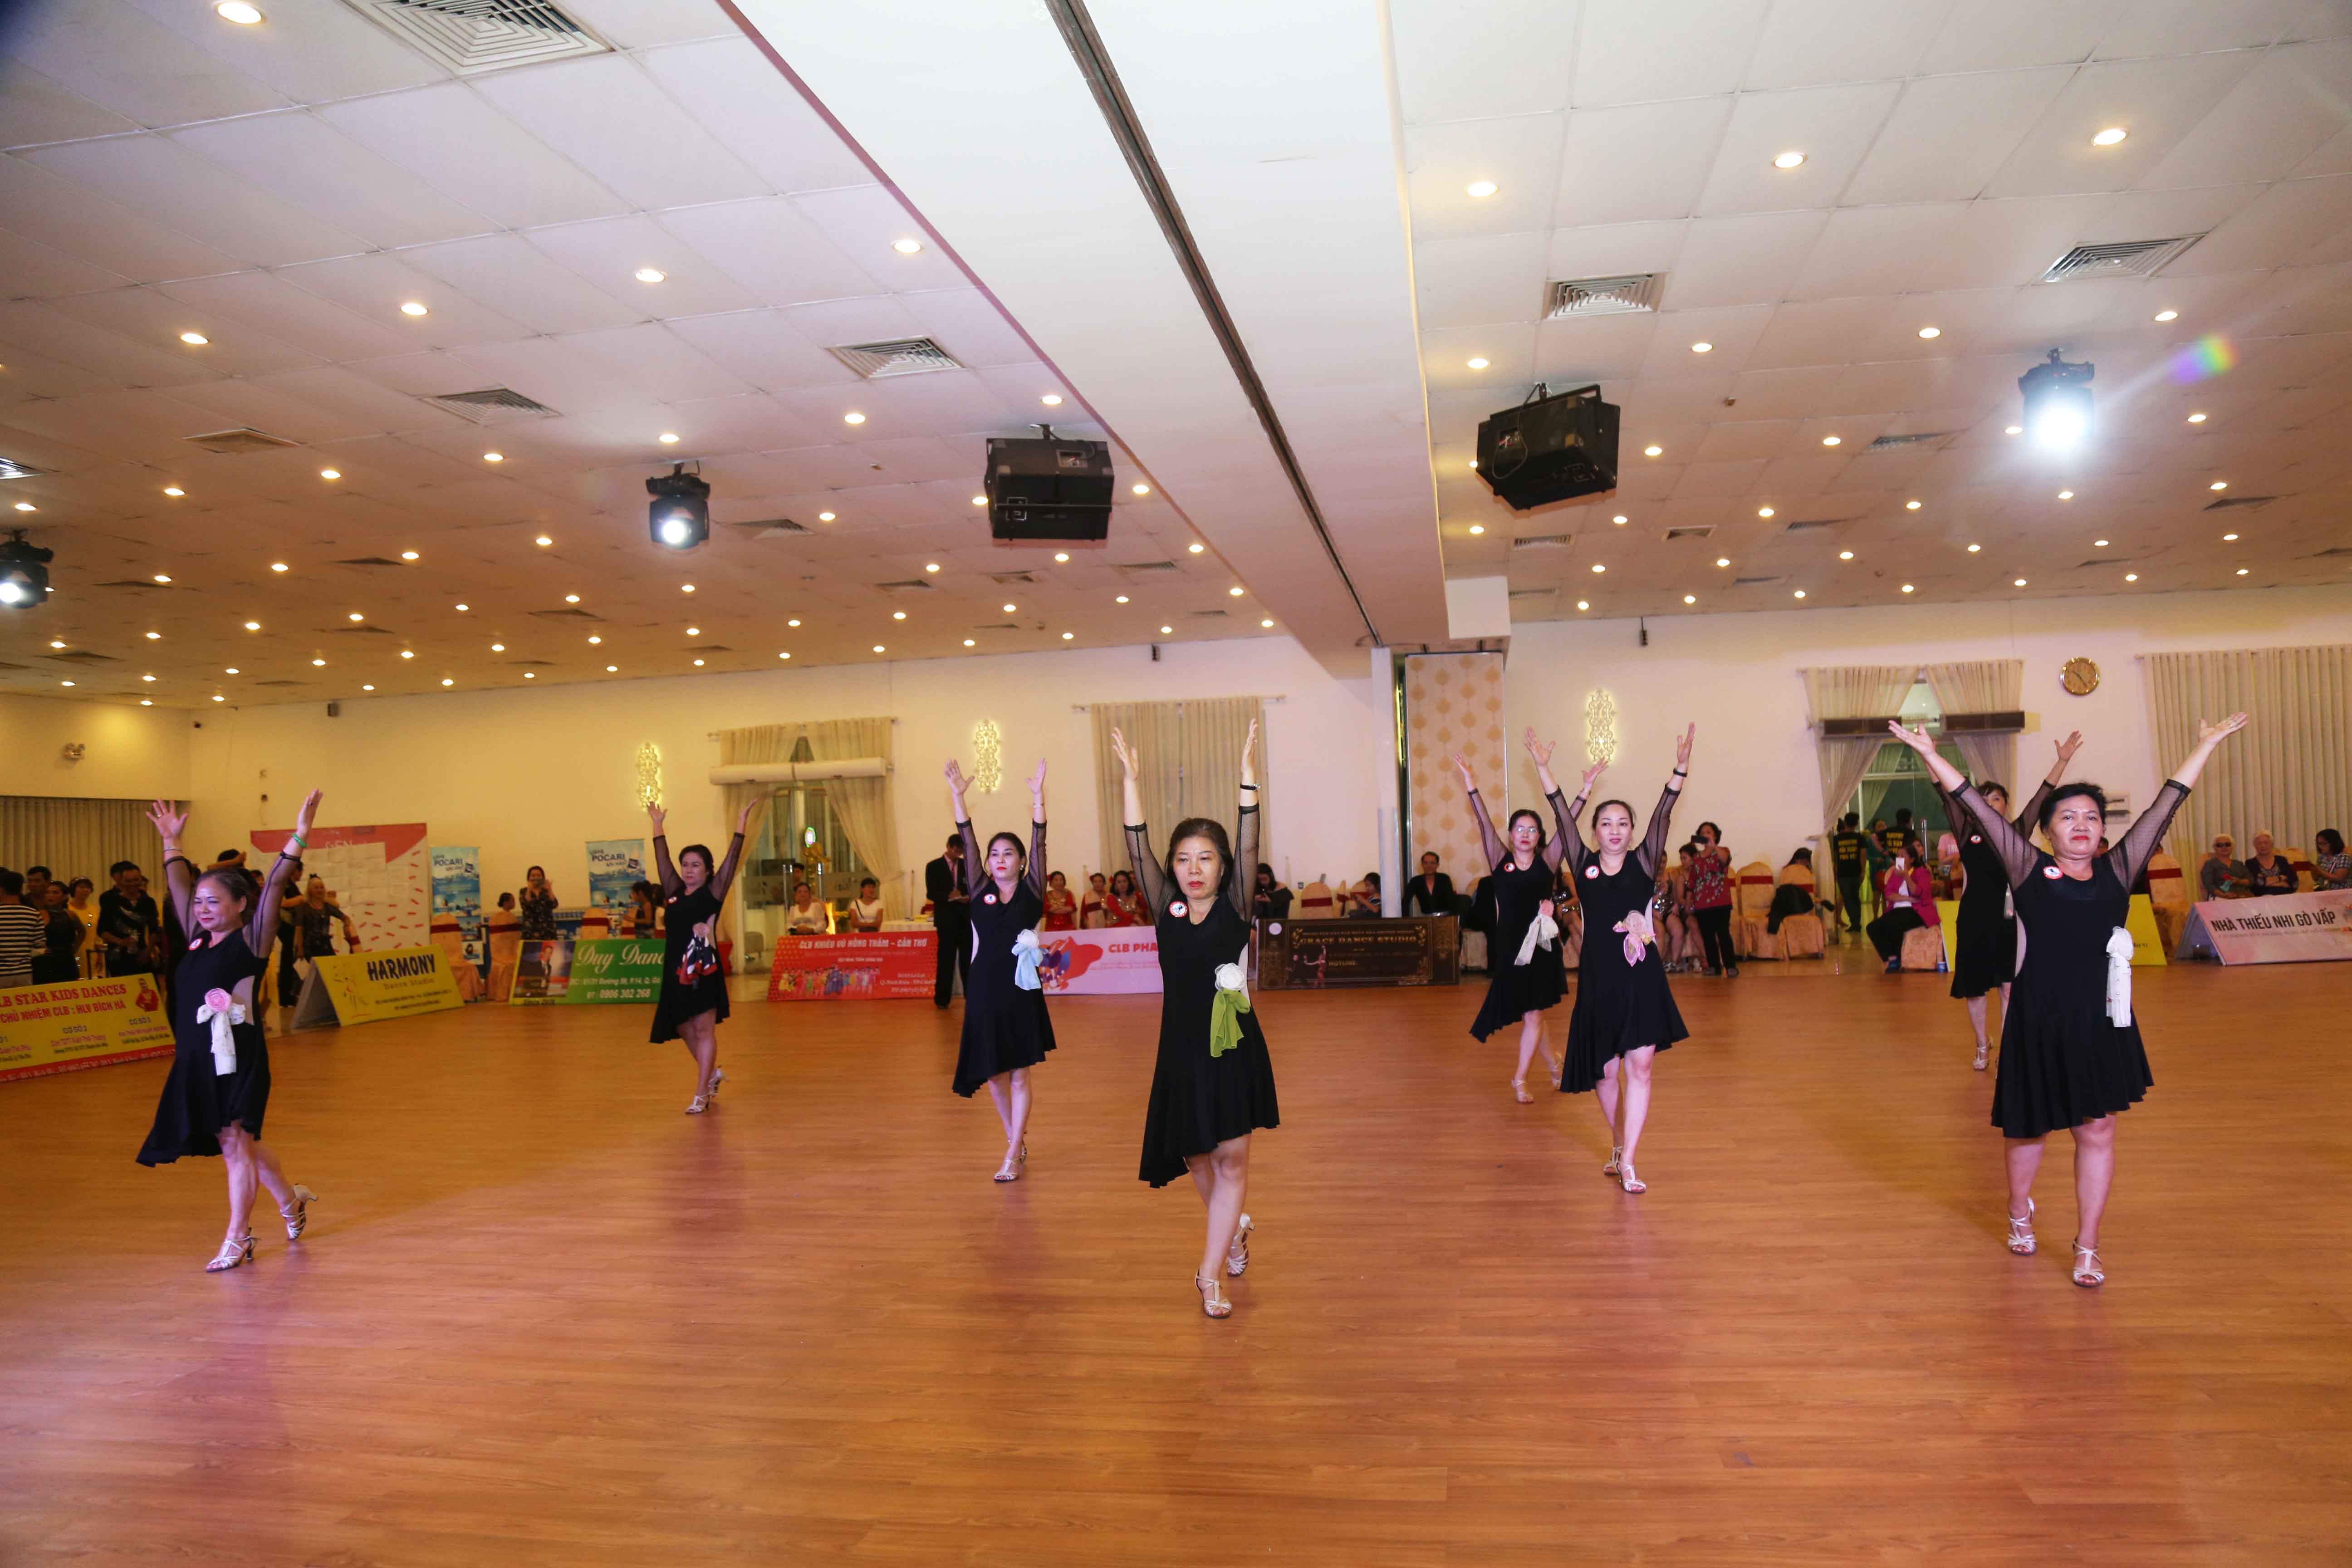 Hình ảnh: Gần 300 VĐV tham dự Giải khiêu vũ thể thao Cúp Grace Dance Mở Rộng số 6